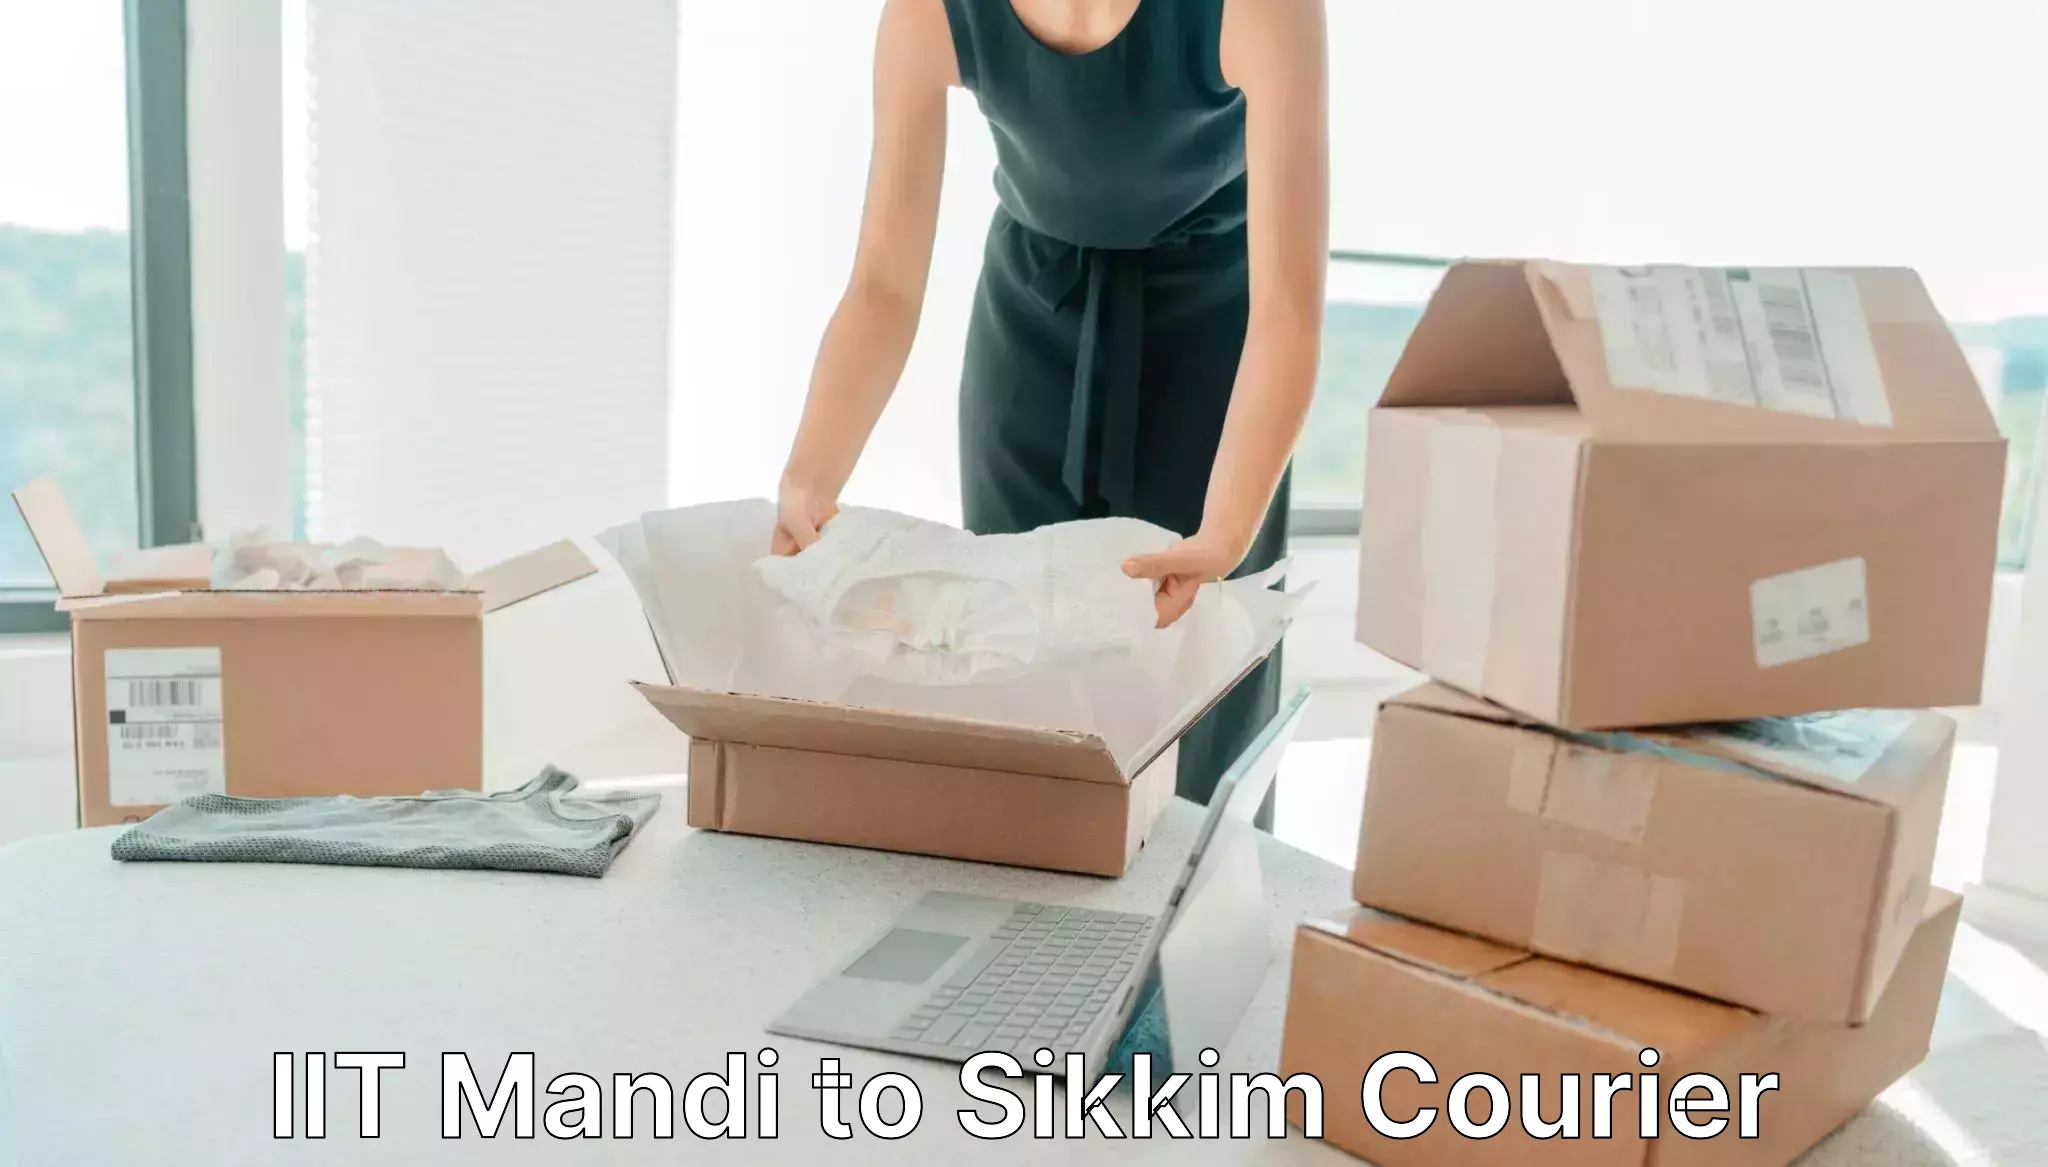 Custom courier packaging in IIT Mandi to Gangtok